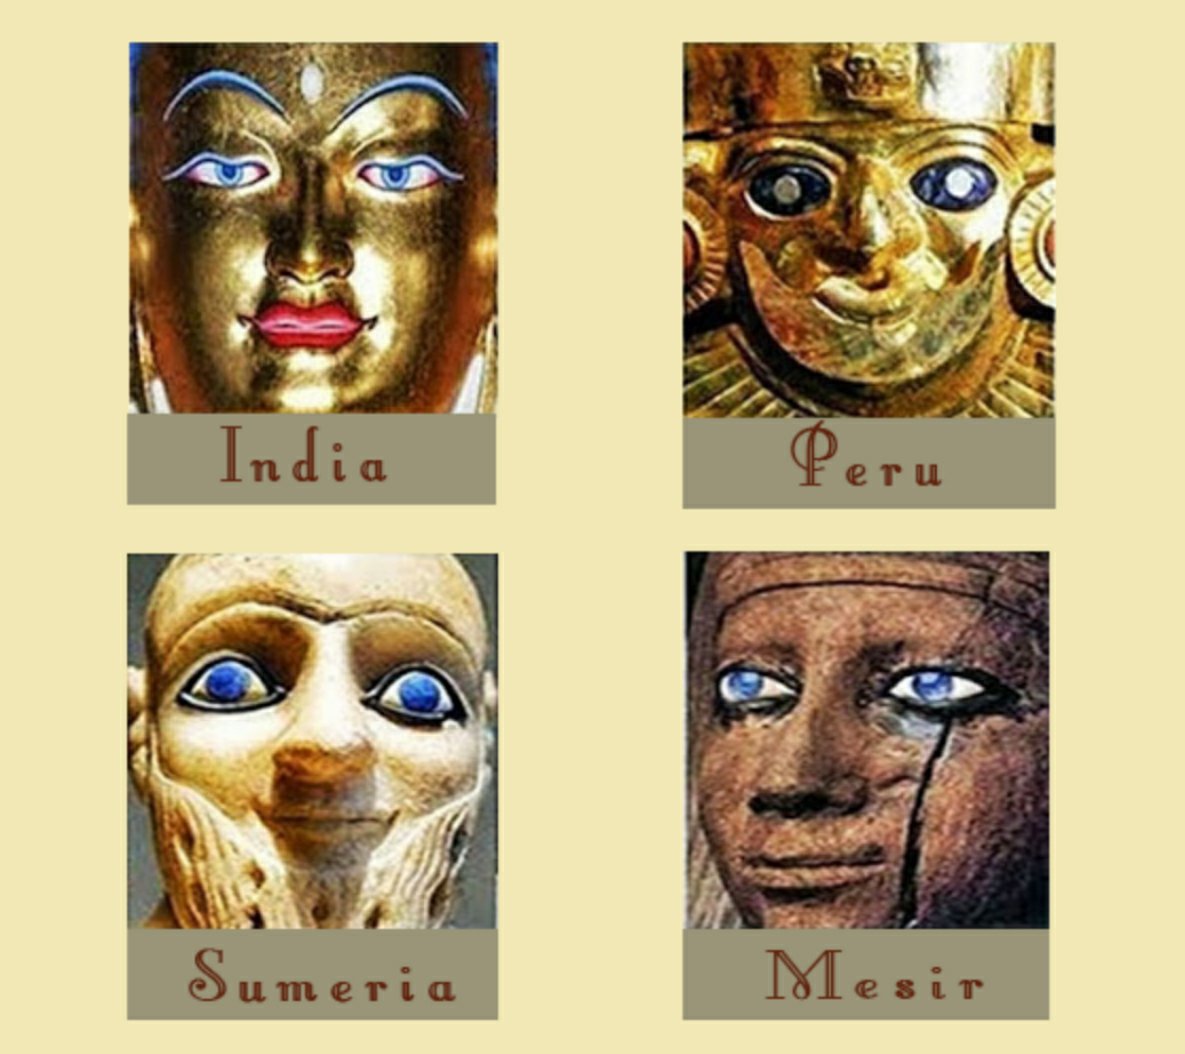 Mnoho starovekých civilizácií zobrazovalo bytosti s modrými očami.